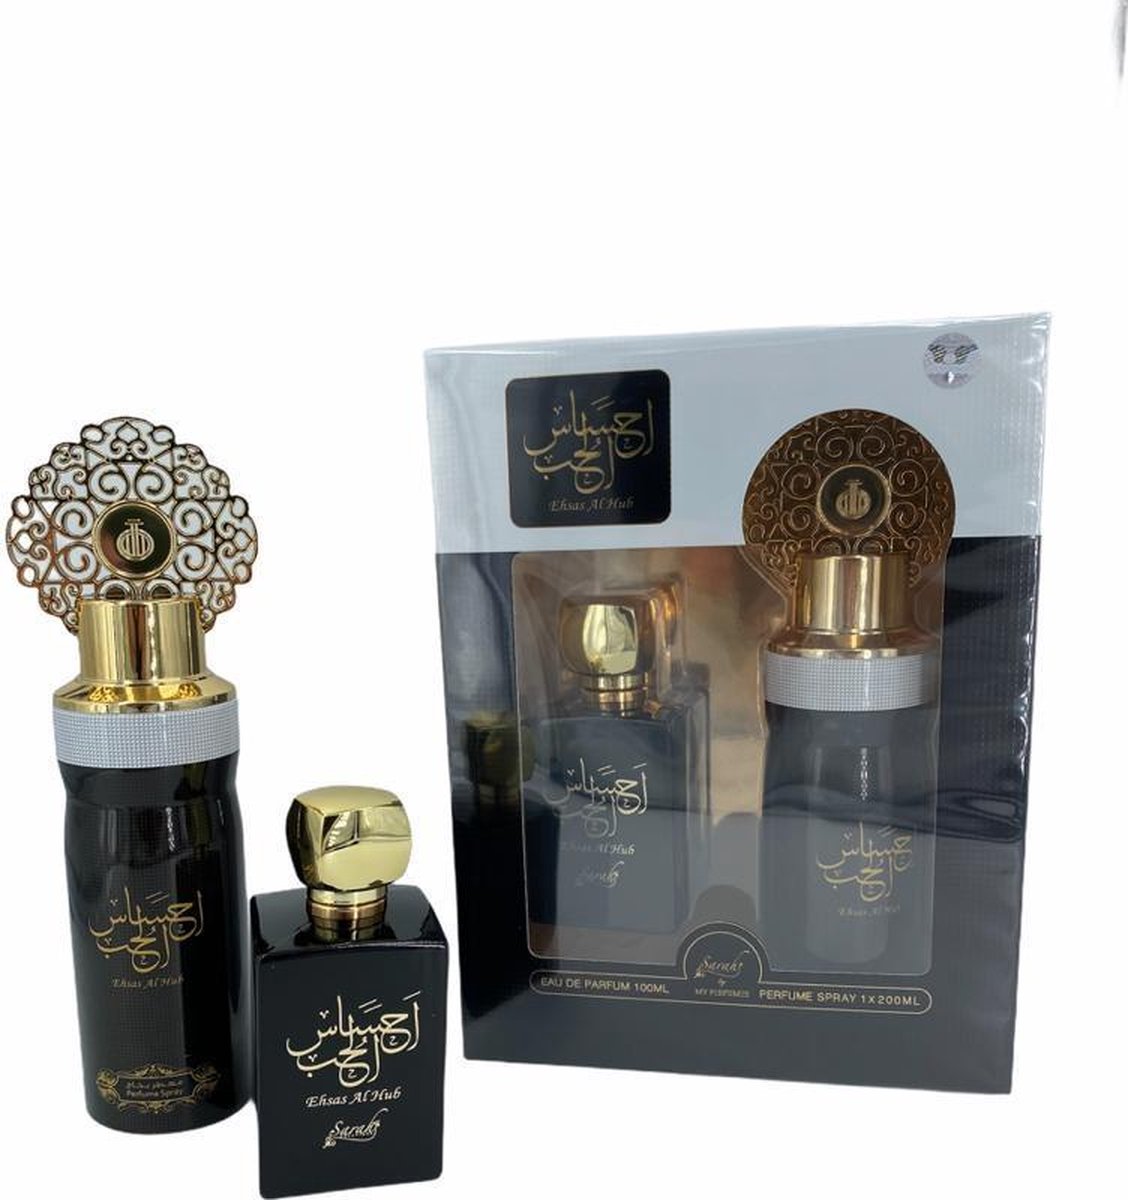 Désodorisant maison Ehsas Al Hub 300ml - My Perfumes 